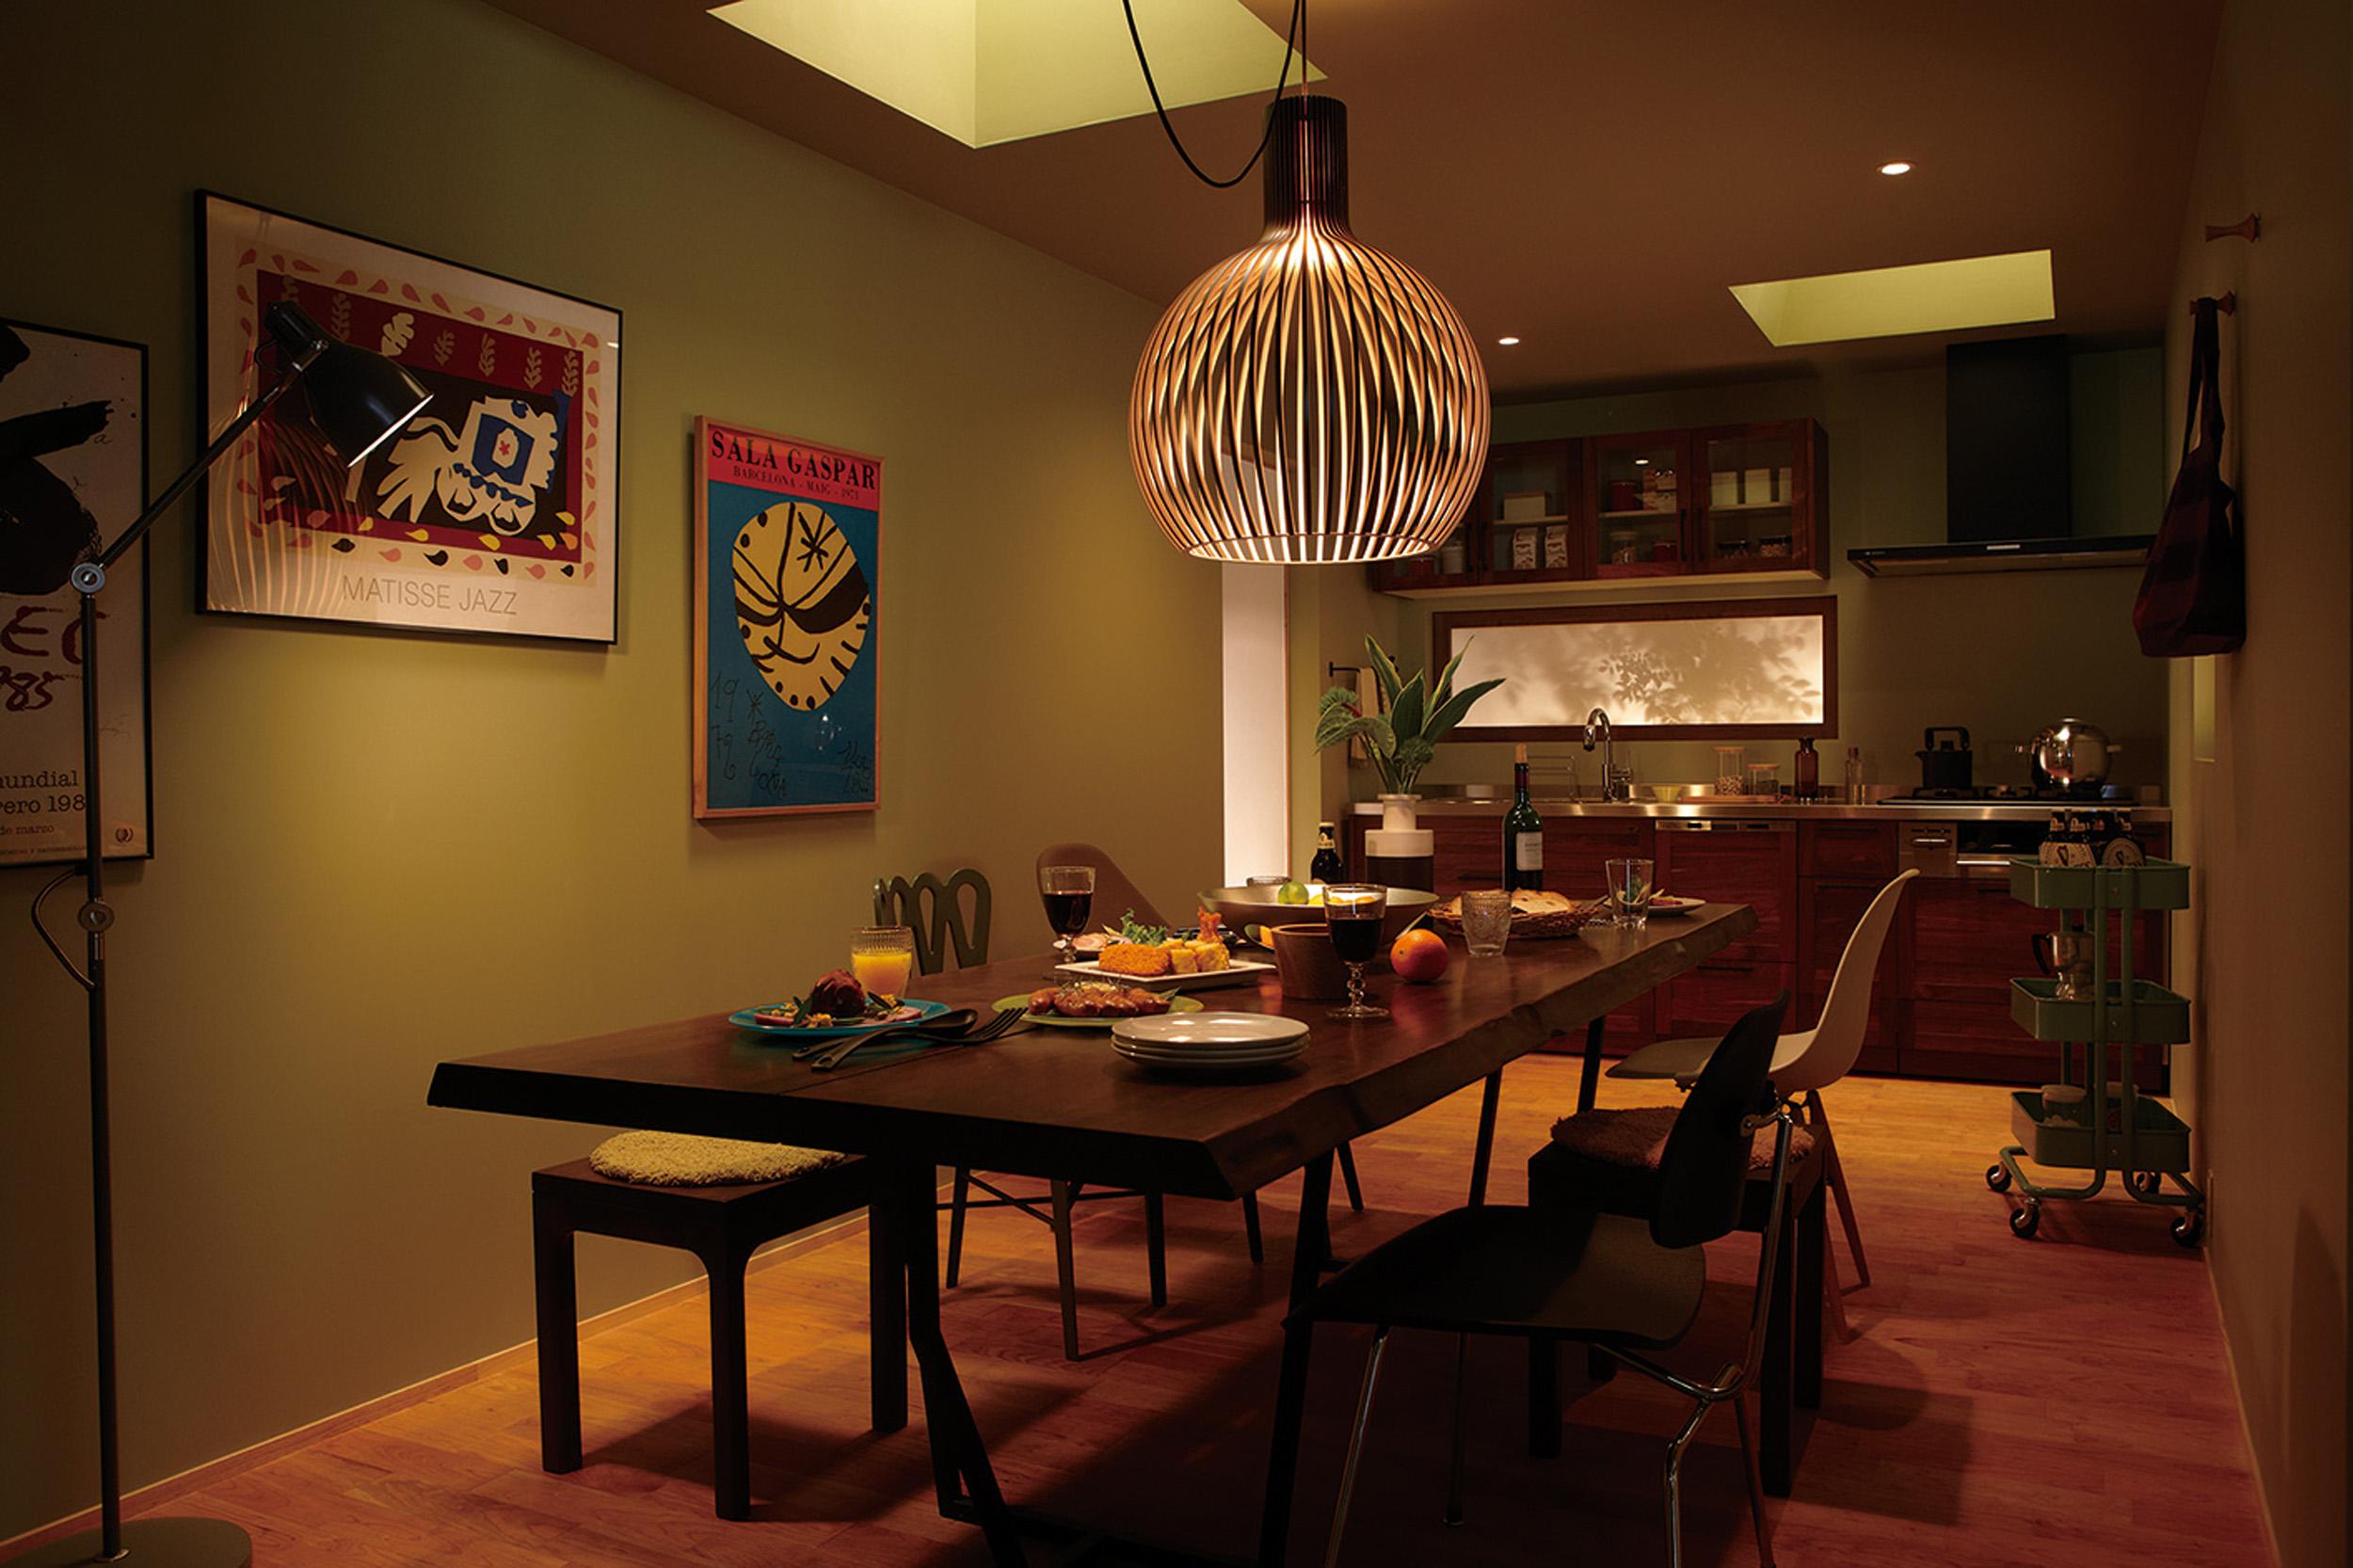 Gemütliche Atmosphäre durch Deckenfenster #stuhl #stehlampe #küchenschrank #lampe #tisch ©Secto Design